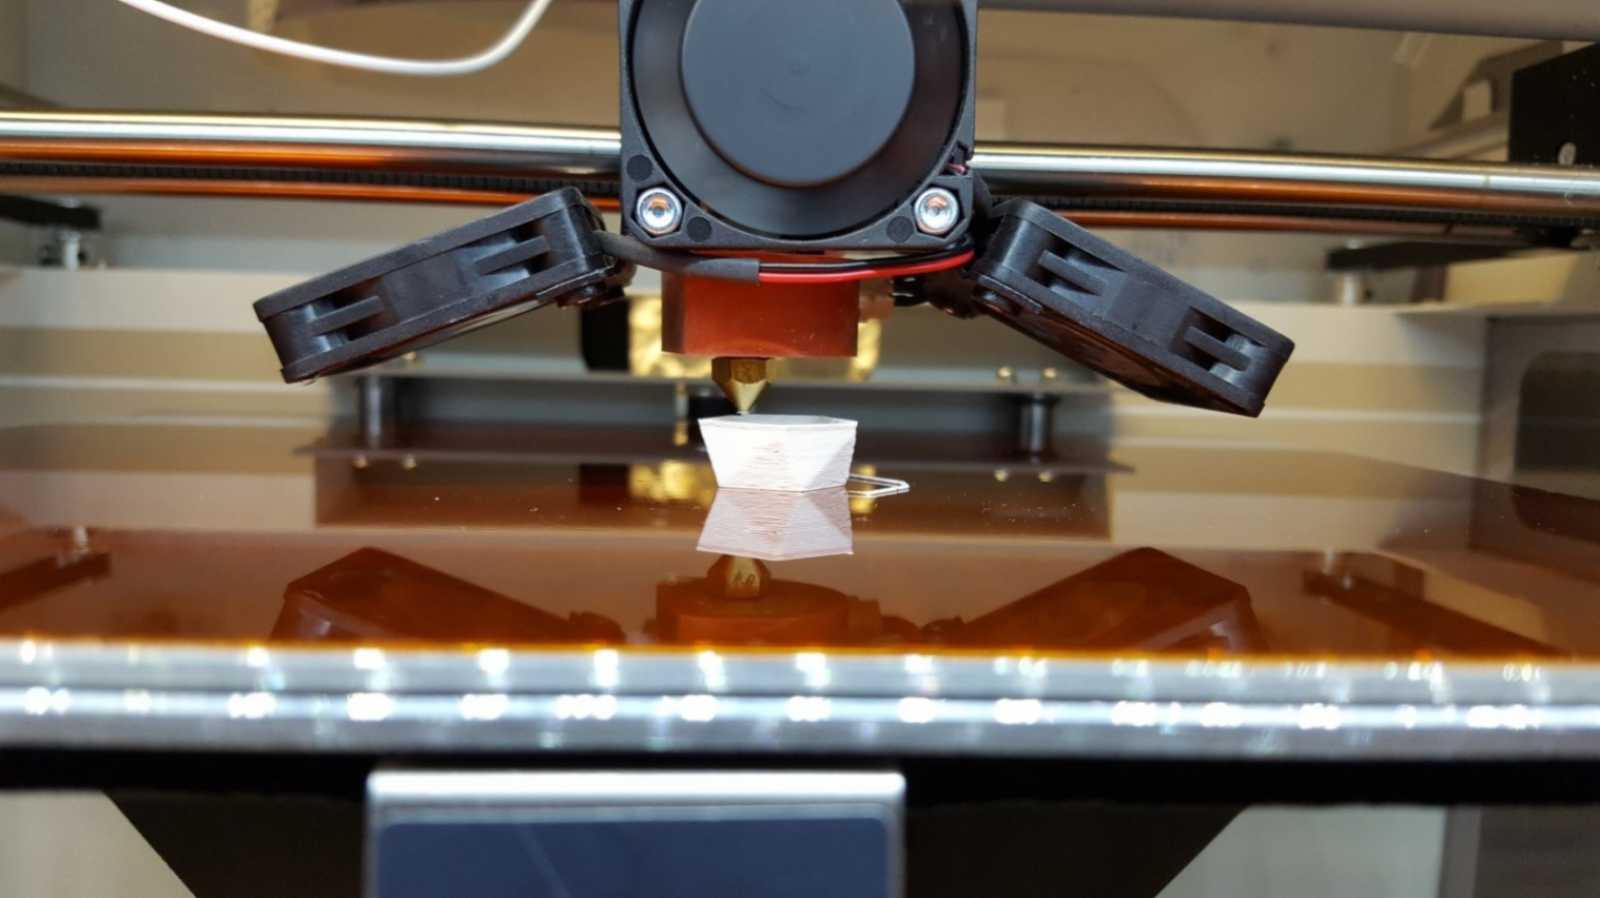 Der 3D-Drucker druckt Schicht für Schicht des keramischen Materials. (Foto: Cristina Galusca)